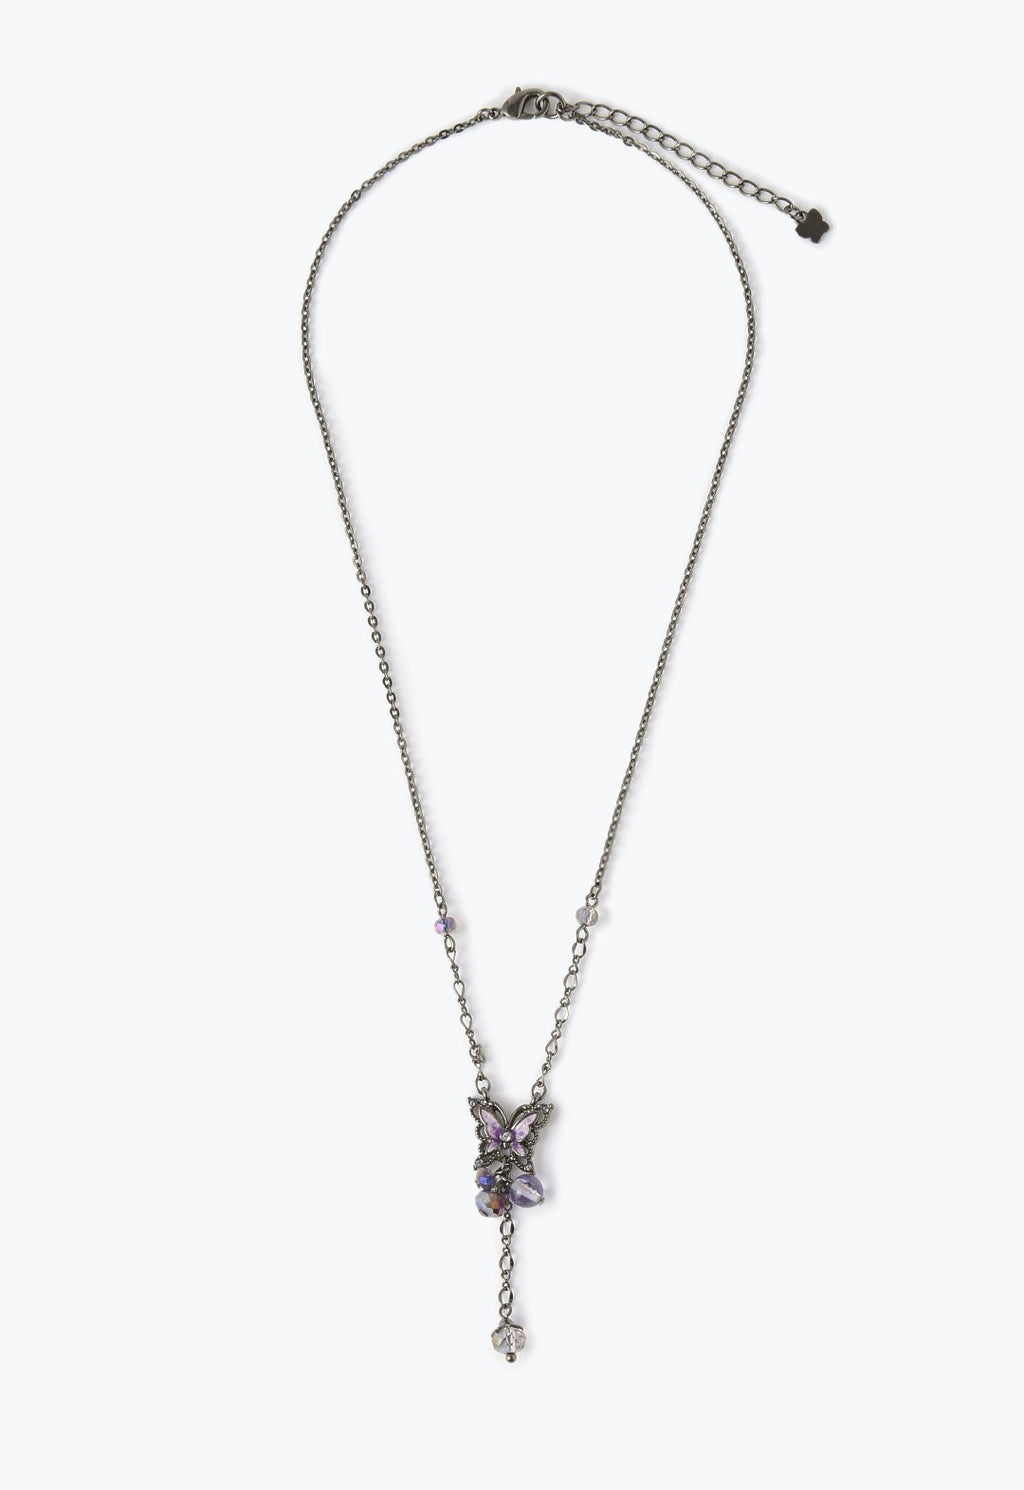 それ以外は美品かと思います【最終値下げ】ANNA SUI ネックレス 2連セット 蝶鍵 ハート南京錠